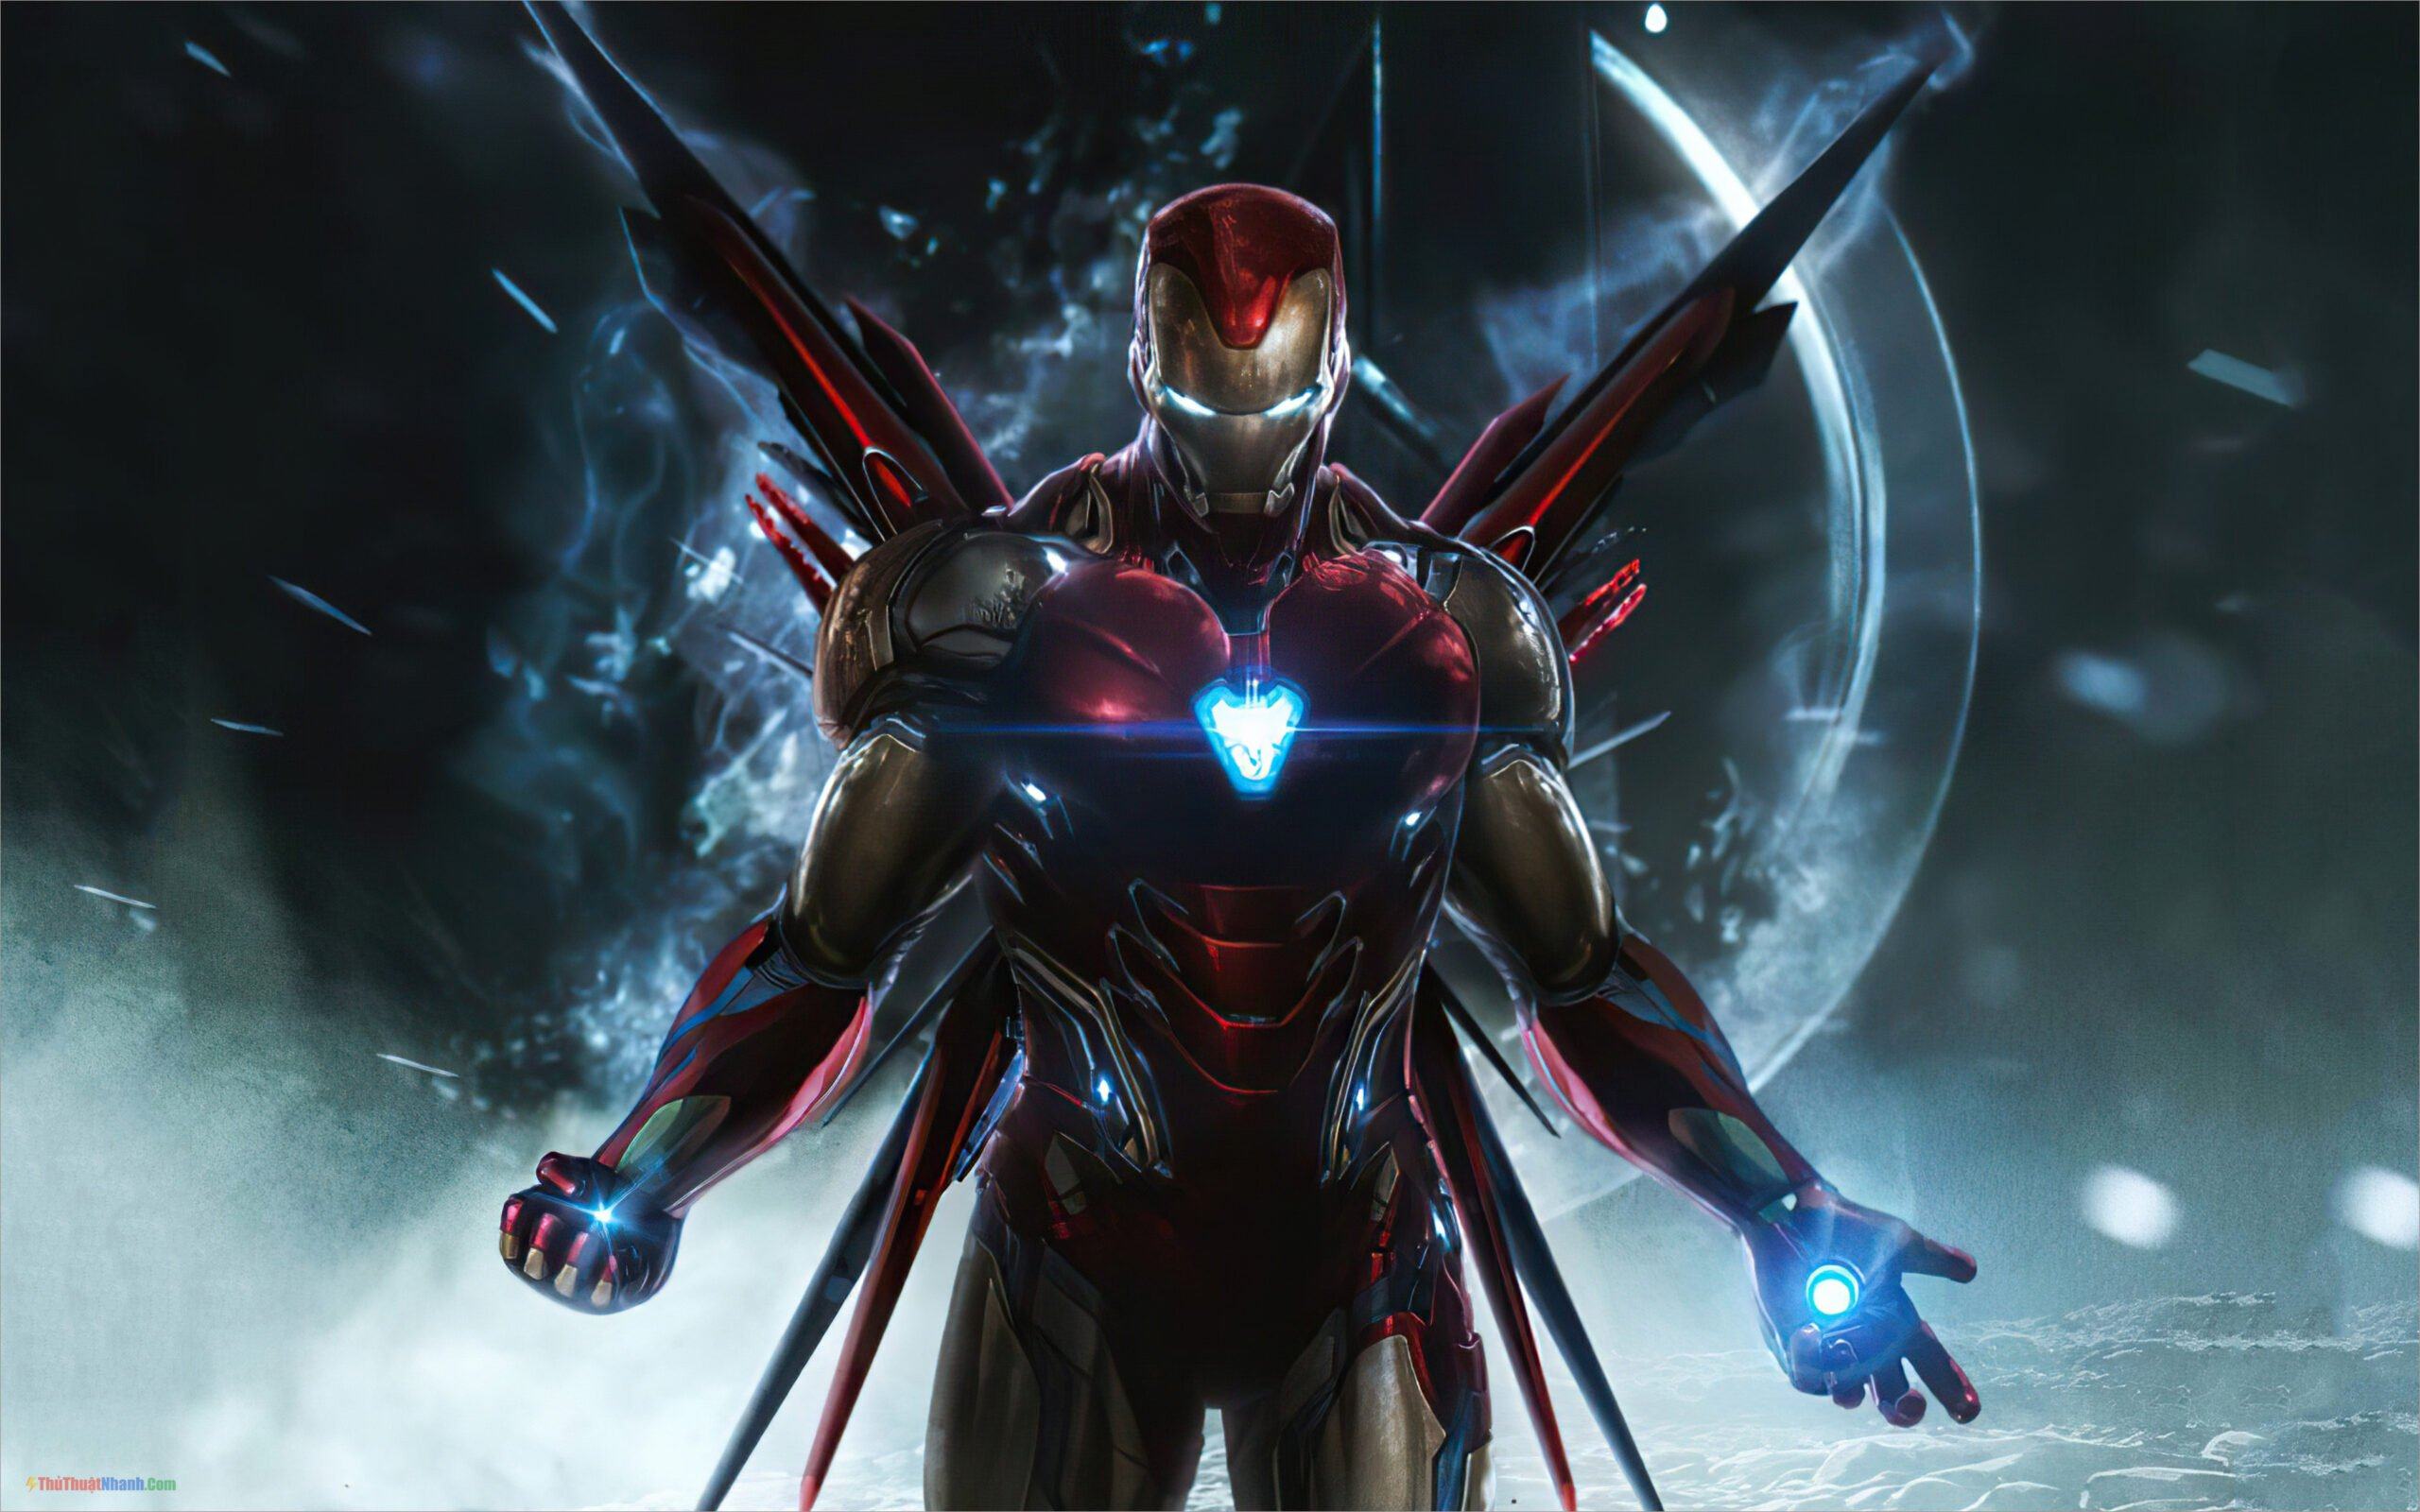 Ảnh Người Sắt (Iron Man) - Khám phá thế giới của Tony Stark và tham gia vào chiến trường với trang phục giáp đầy ấn tượng của Iron Man. Những hình ảnh đầy mạnh mẽ này sẽ khiến bạn cảm thấy như mình đang trực tiếp tham gia vào cuộc hành trình của nhân vật này.